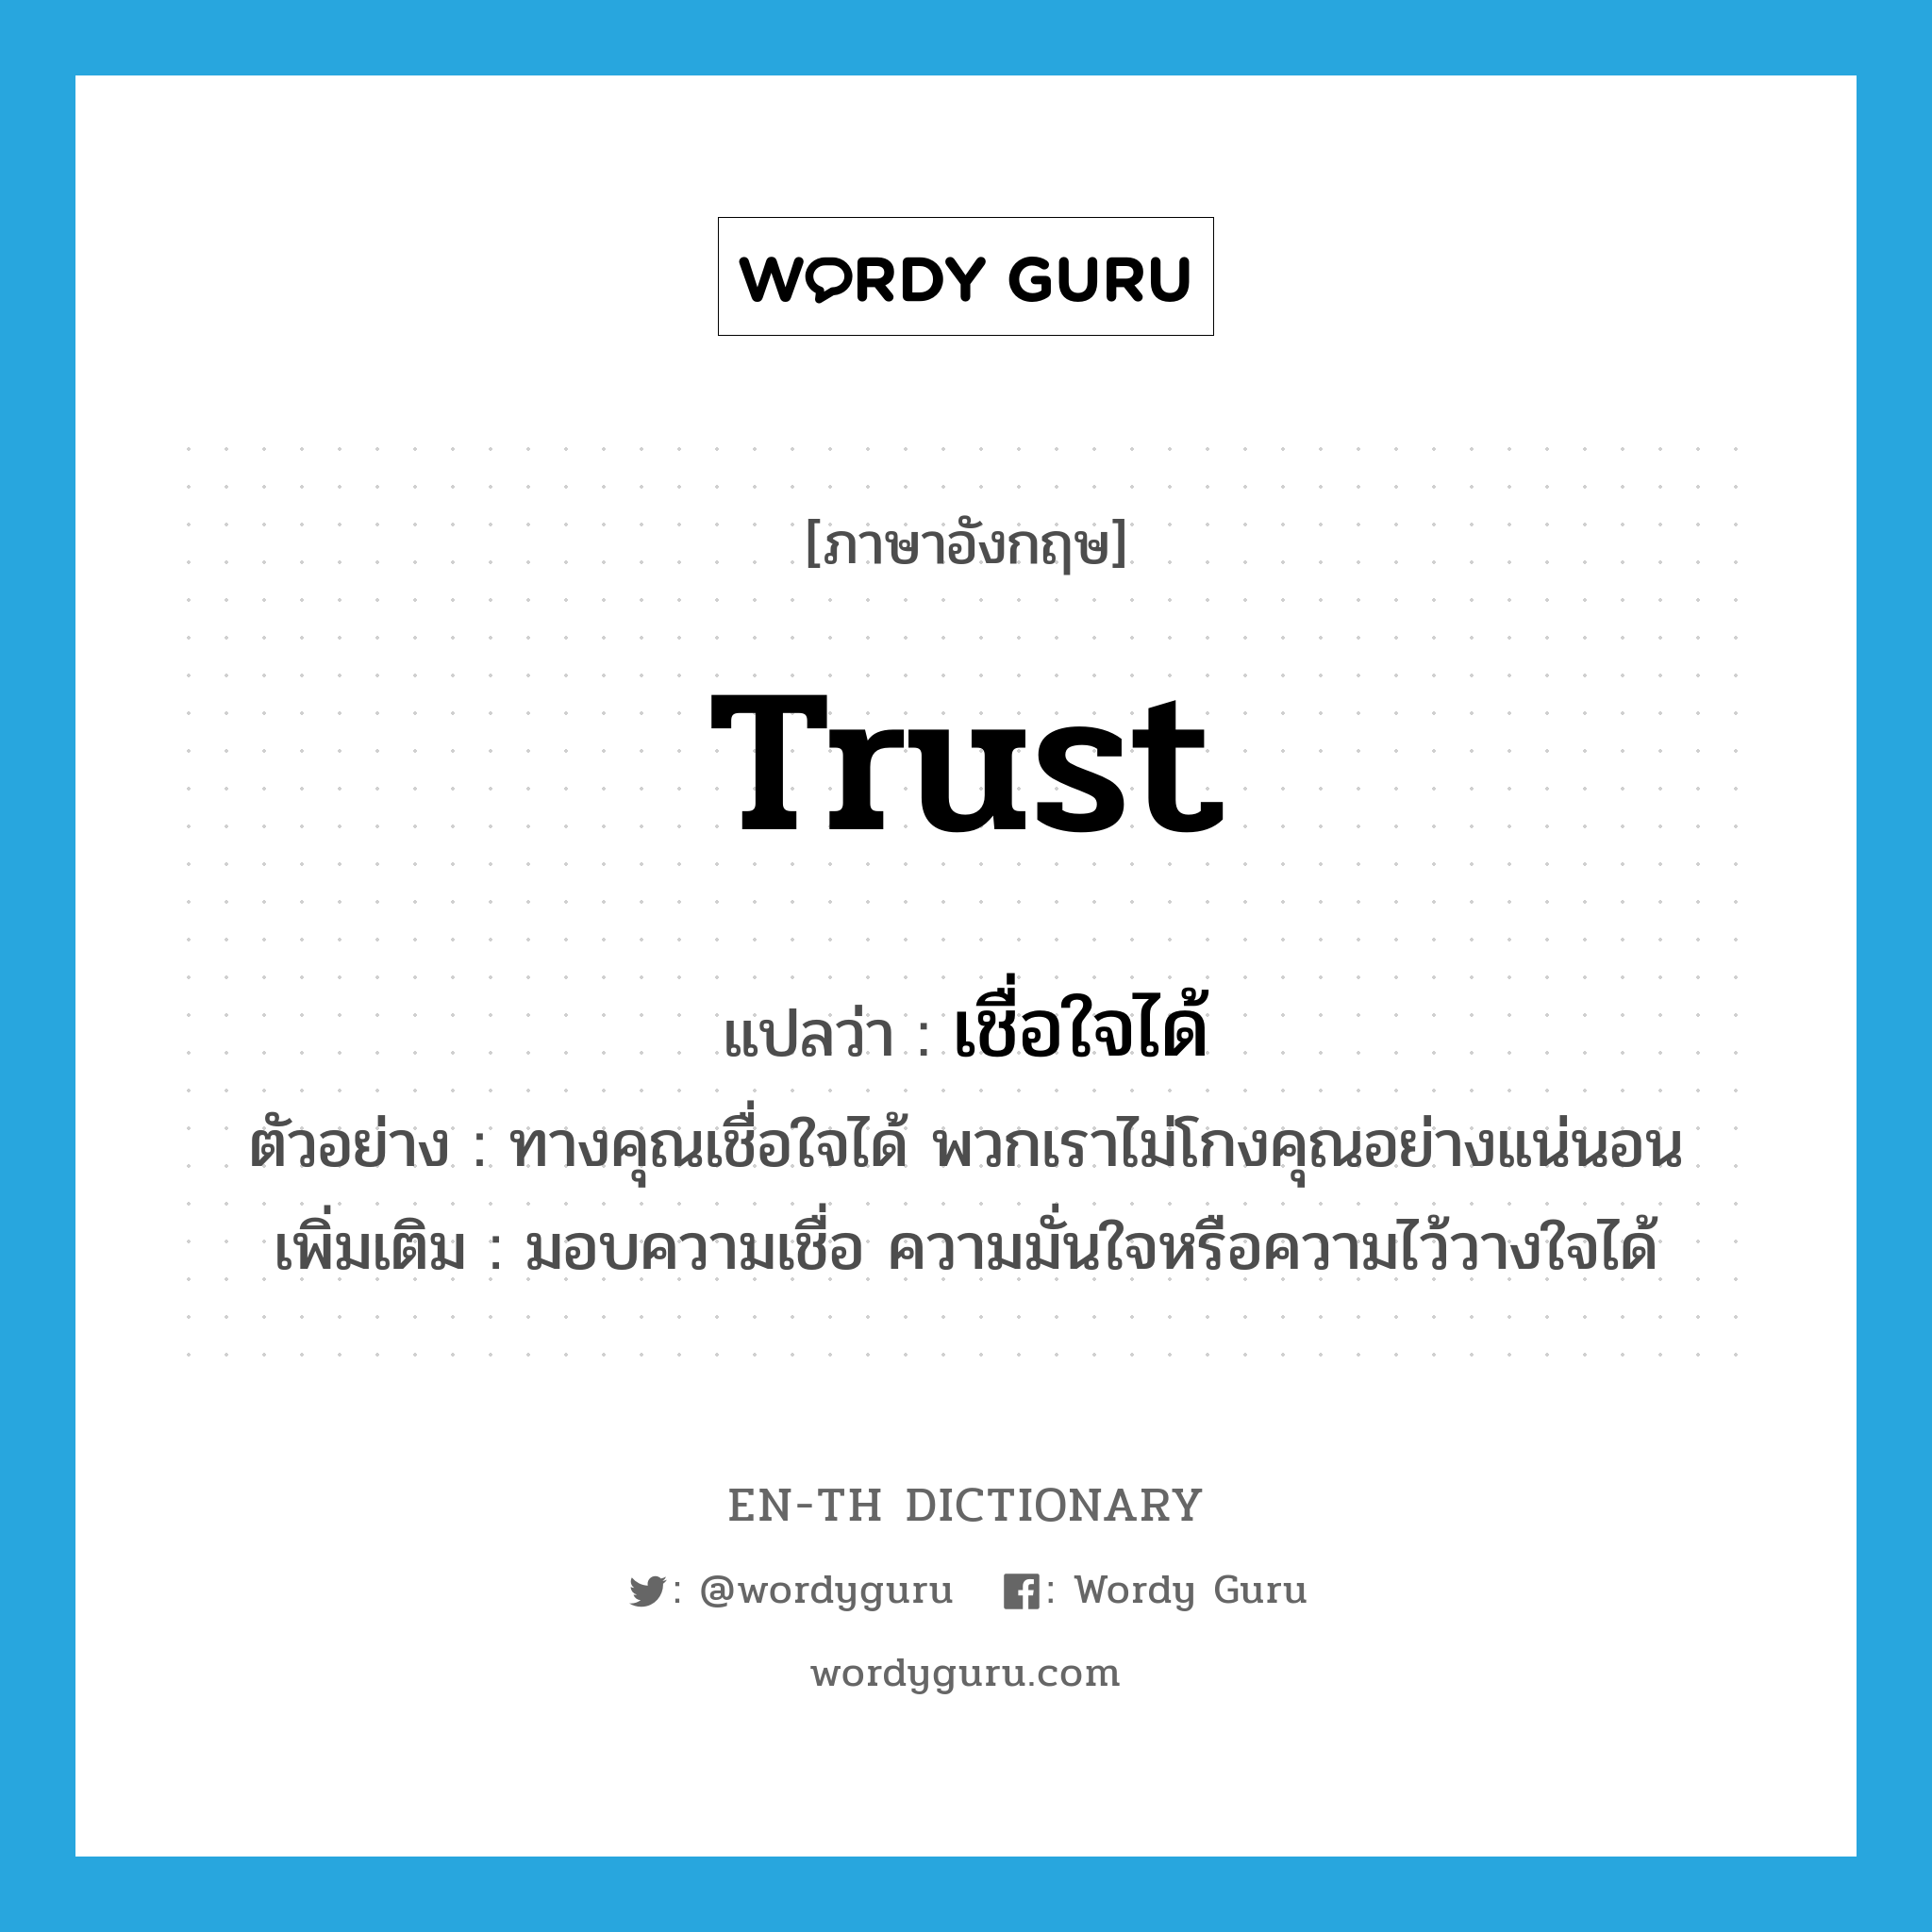 เชื่อใจได้ ภาษาอังกฤษ?, คำศัพท์ภาษาอังกฤษ เชื่อใจได้ แปลว่า trust ประเภท V ตัวอย่าง ทางคุณเชื่อใจได้ พวกเราไม่โกงคุณอย่างแน่นอน เพิ่มเติม มอบความเชื่อ ความมั่นใจหรือความไว้วางใจได้ หมวด V